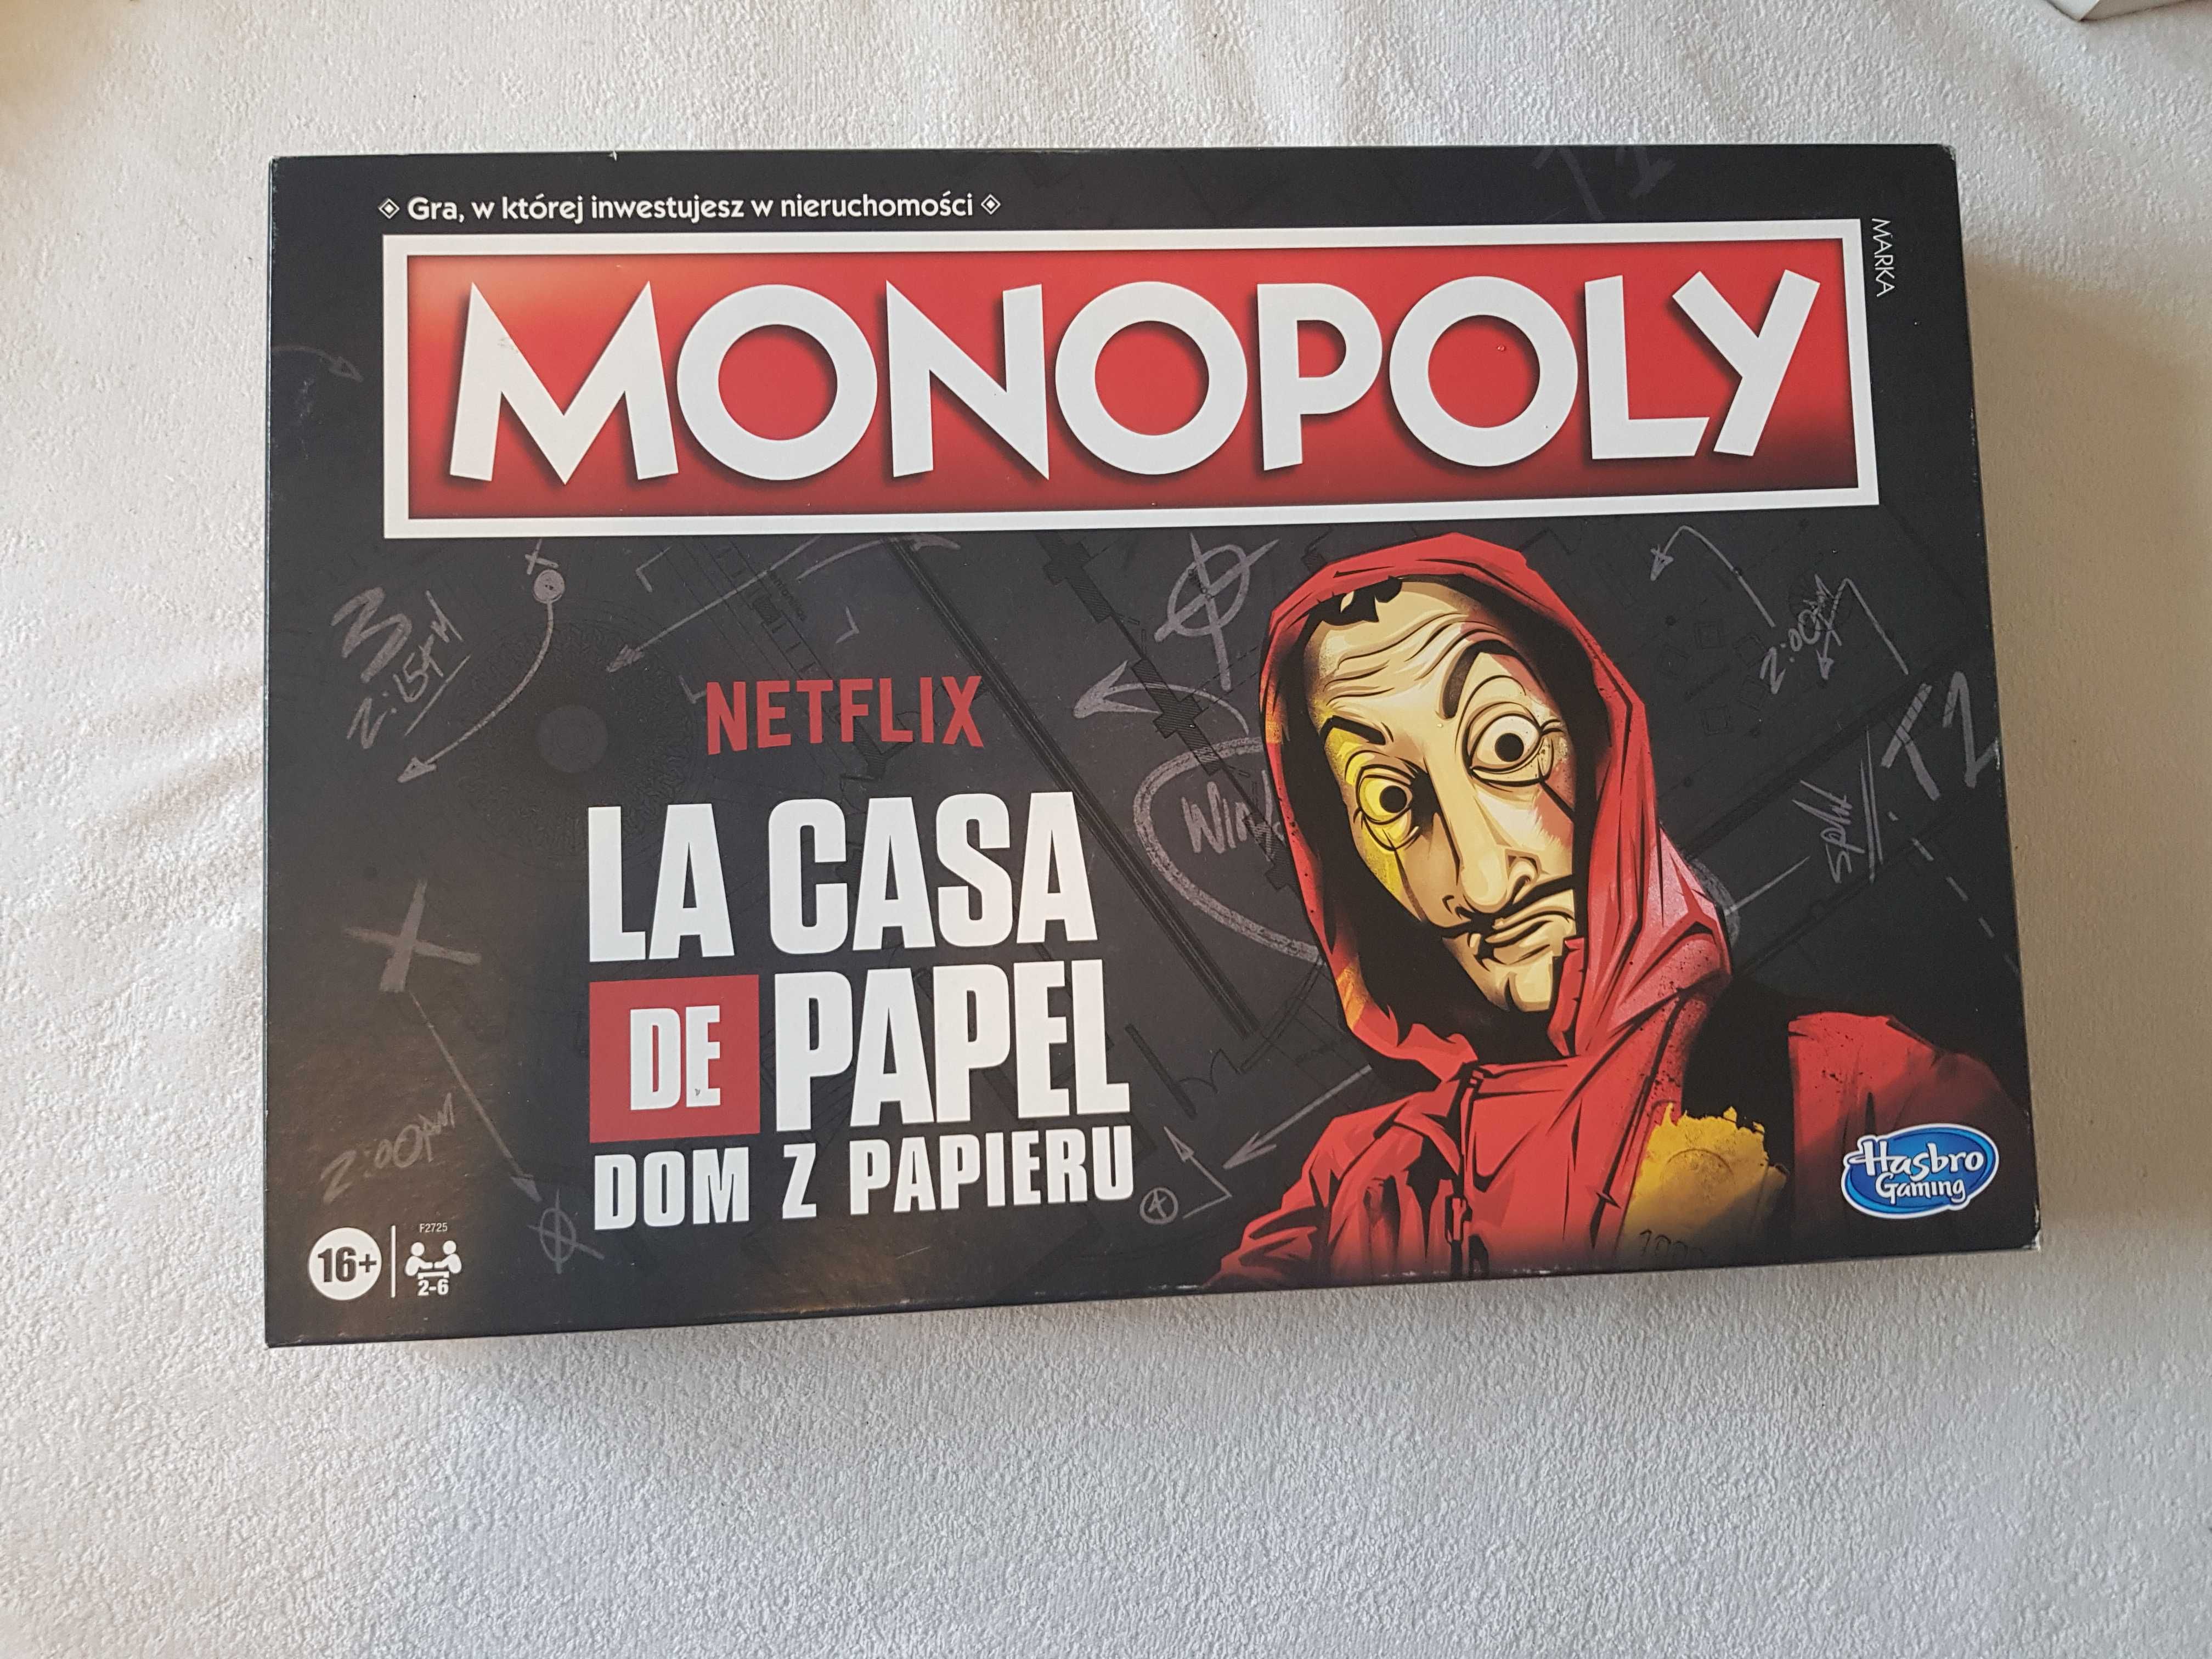 Monopoly Dom z papieru/ La casa de papel